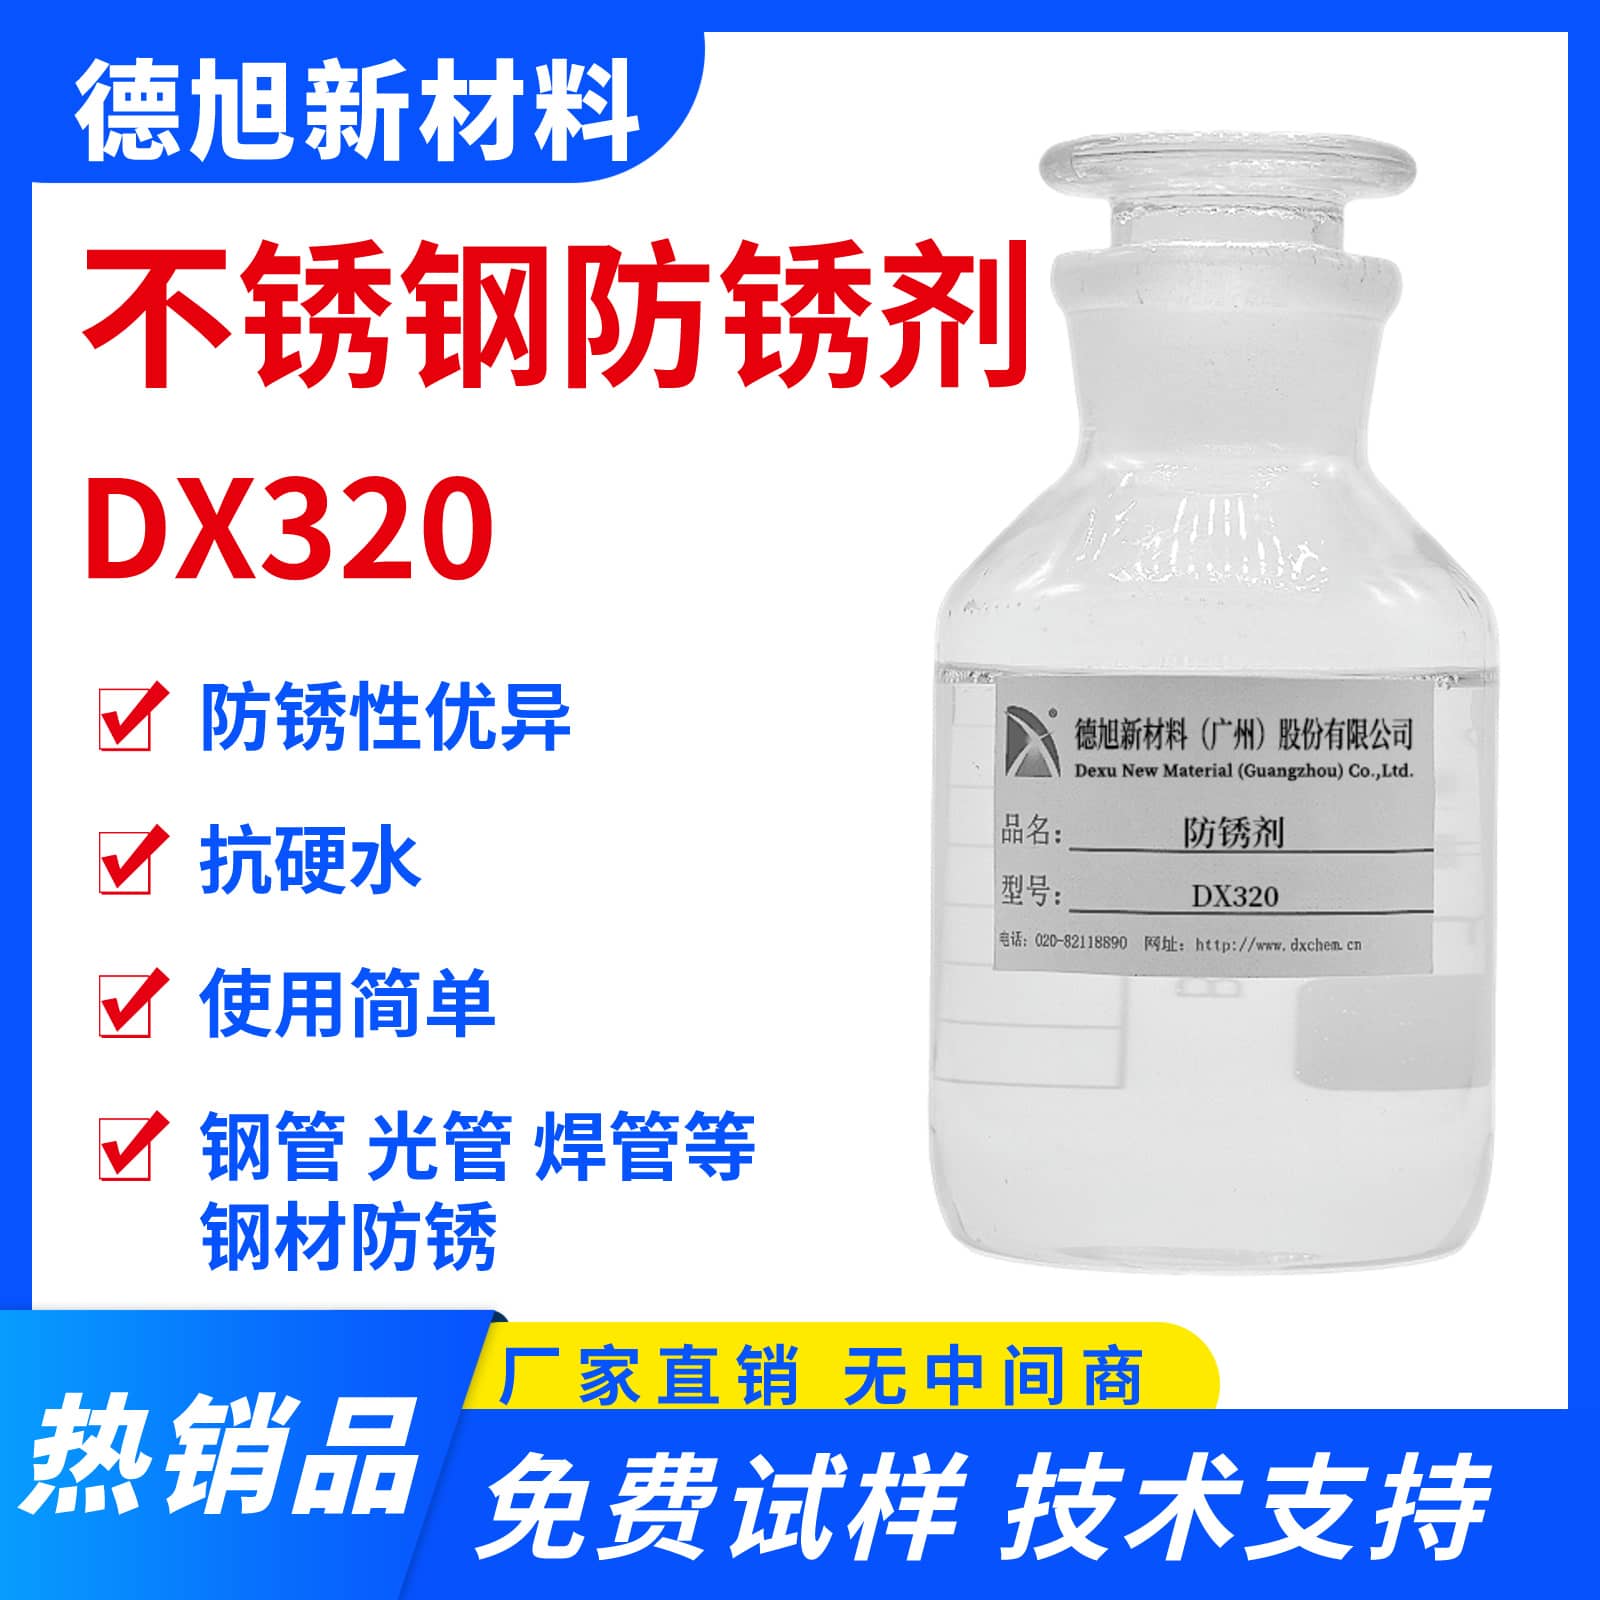 不锈钢防锈剂 德旭DX320 水性钢管防锈液 防止钢管生产时生锈